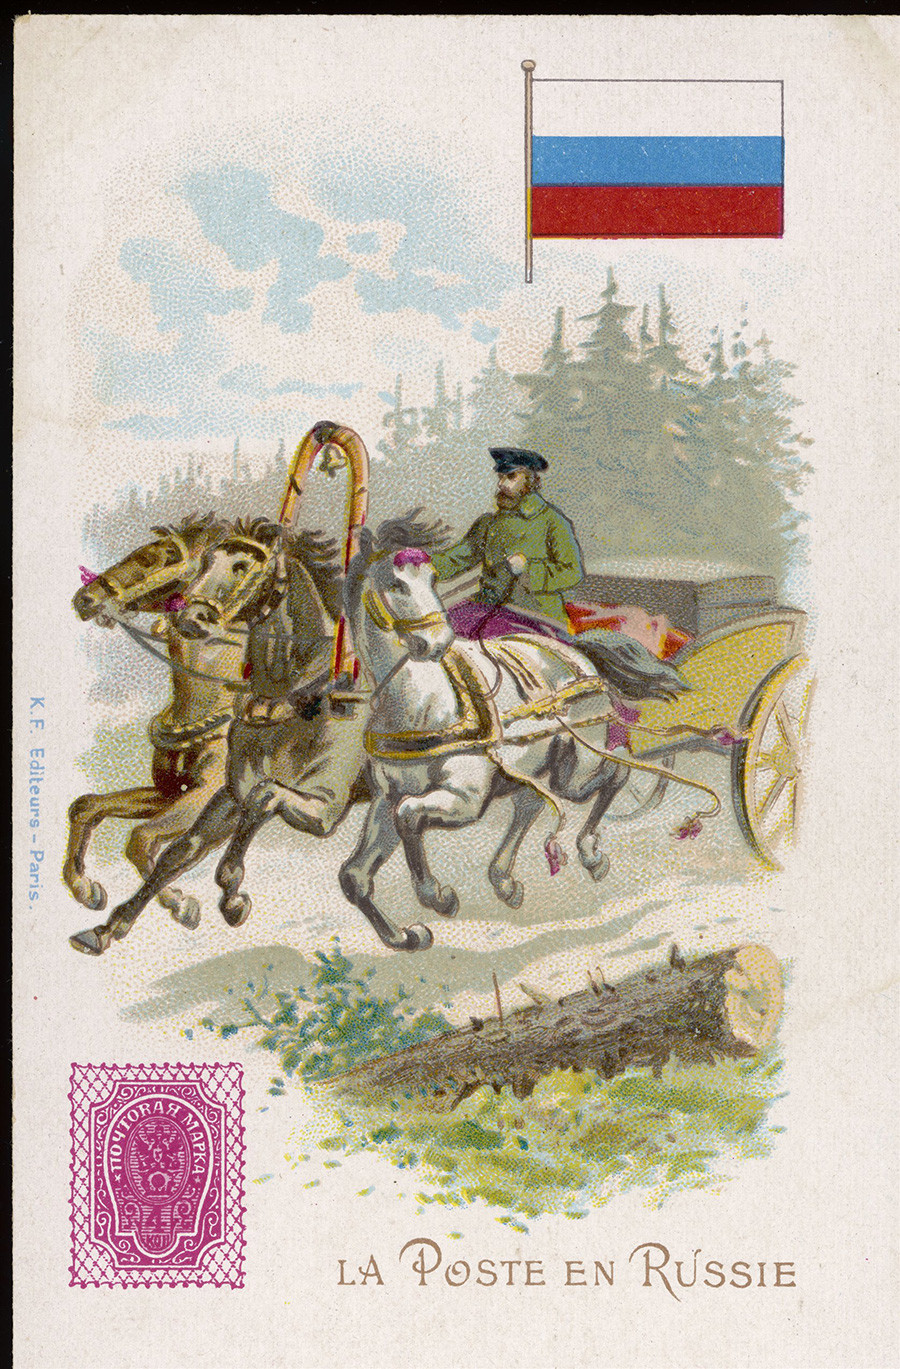 Com três cavalos para puxar sua troika, o carteiro russo pode fazer seu trajeto com velocidade e conforto. Postal emitido por volta do ano de 1900.